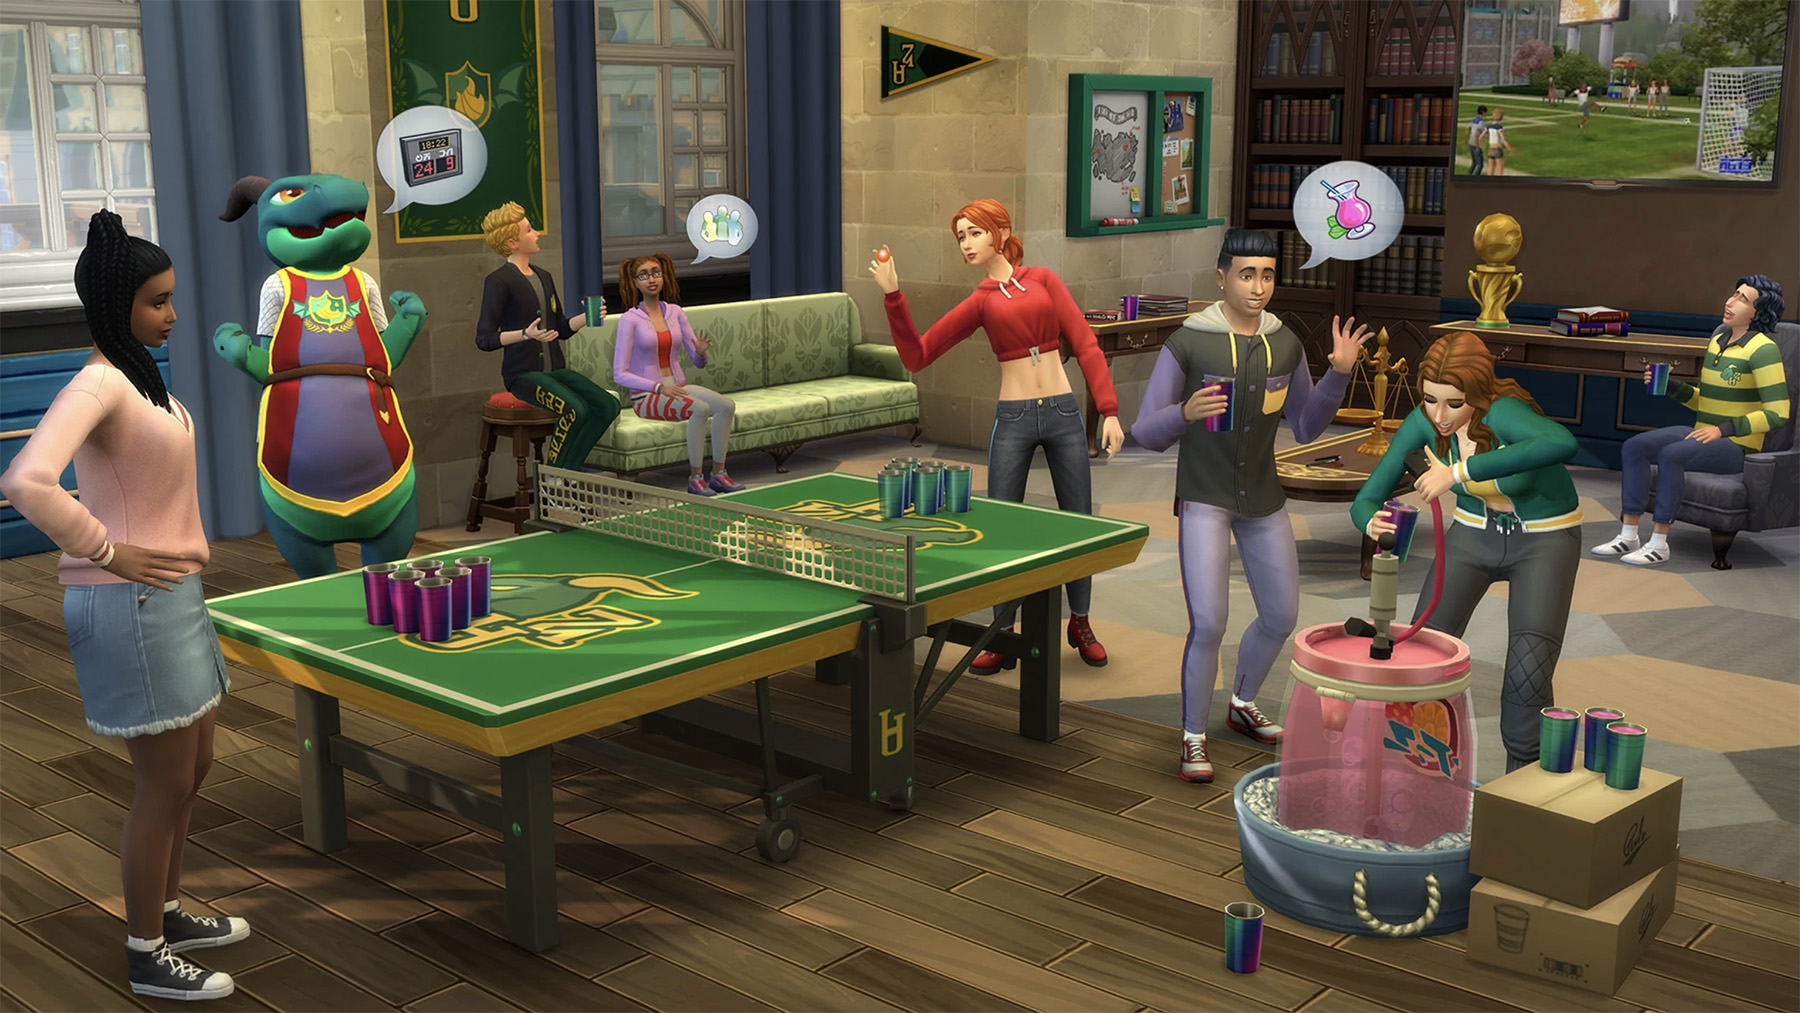 Дополнение к The Sims 4 с ЛГБТ-парой выйдет в России: Игры: Наука и техника: бант-на-машину.рф